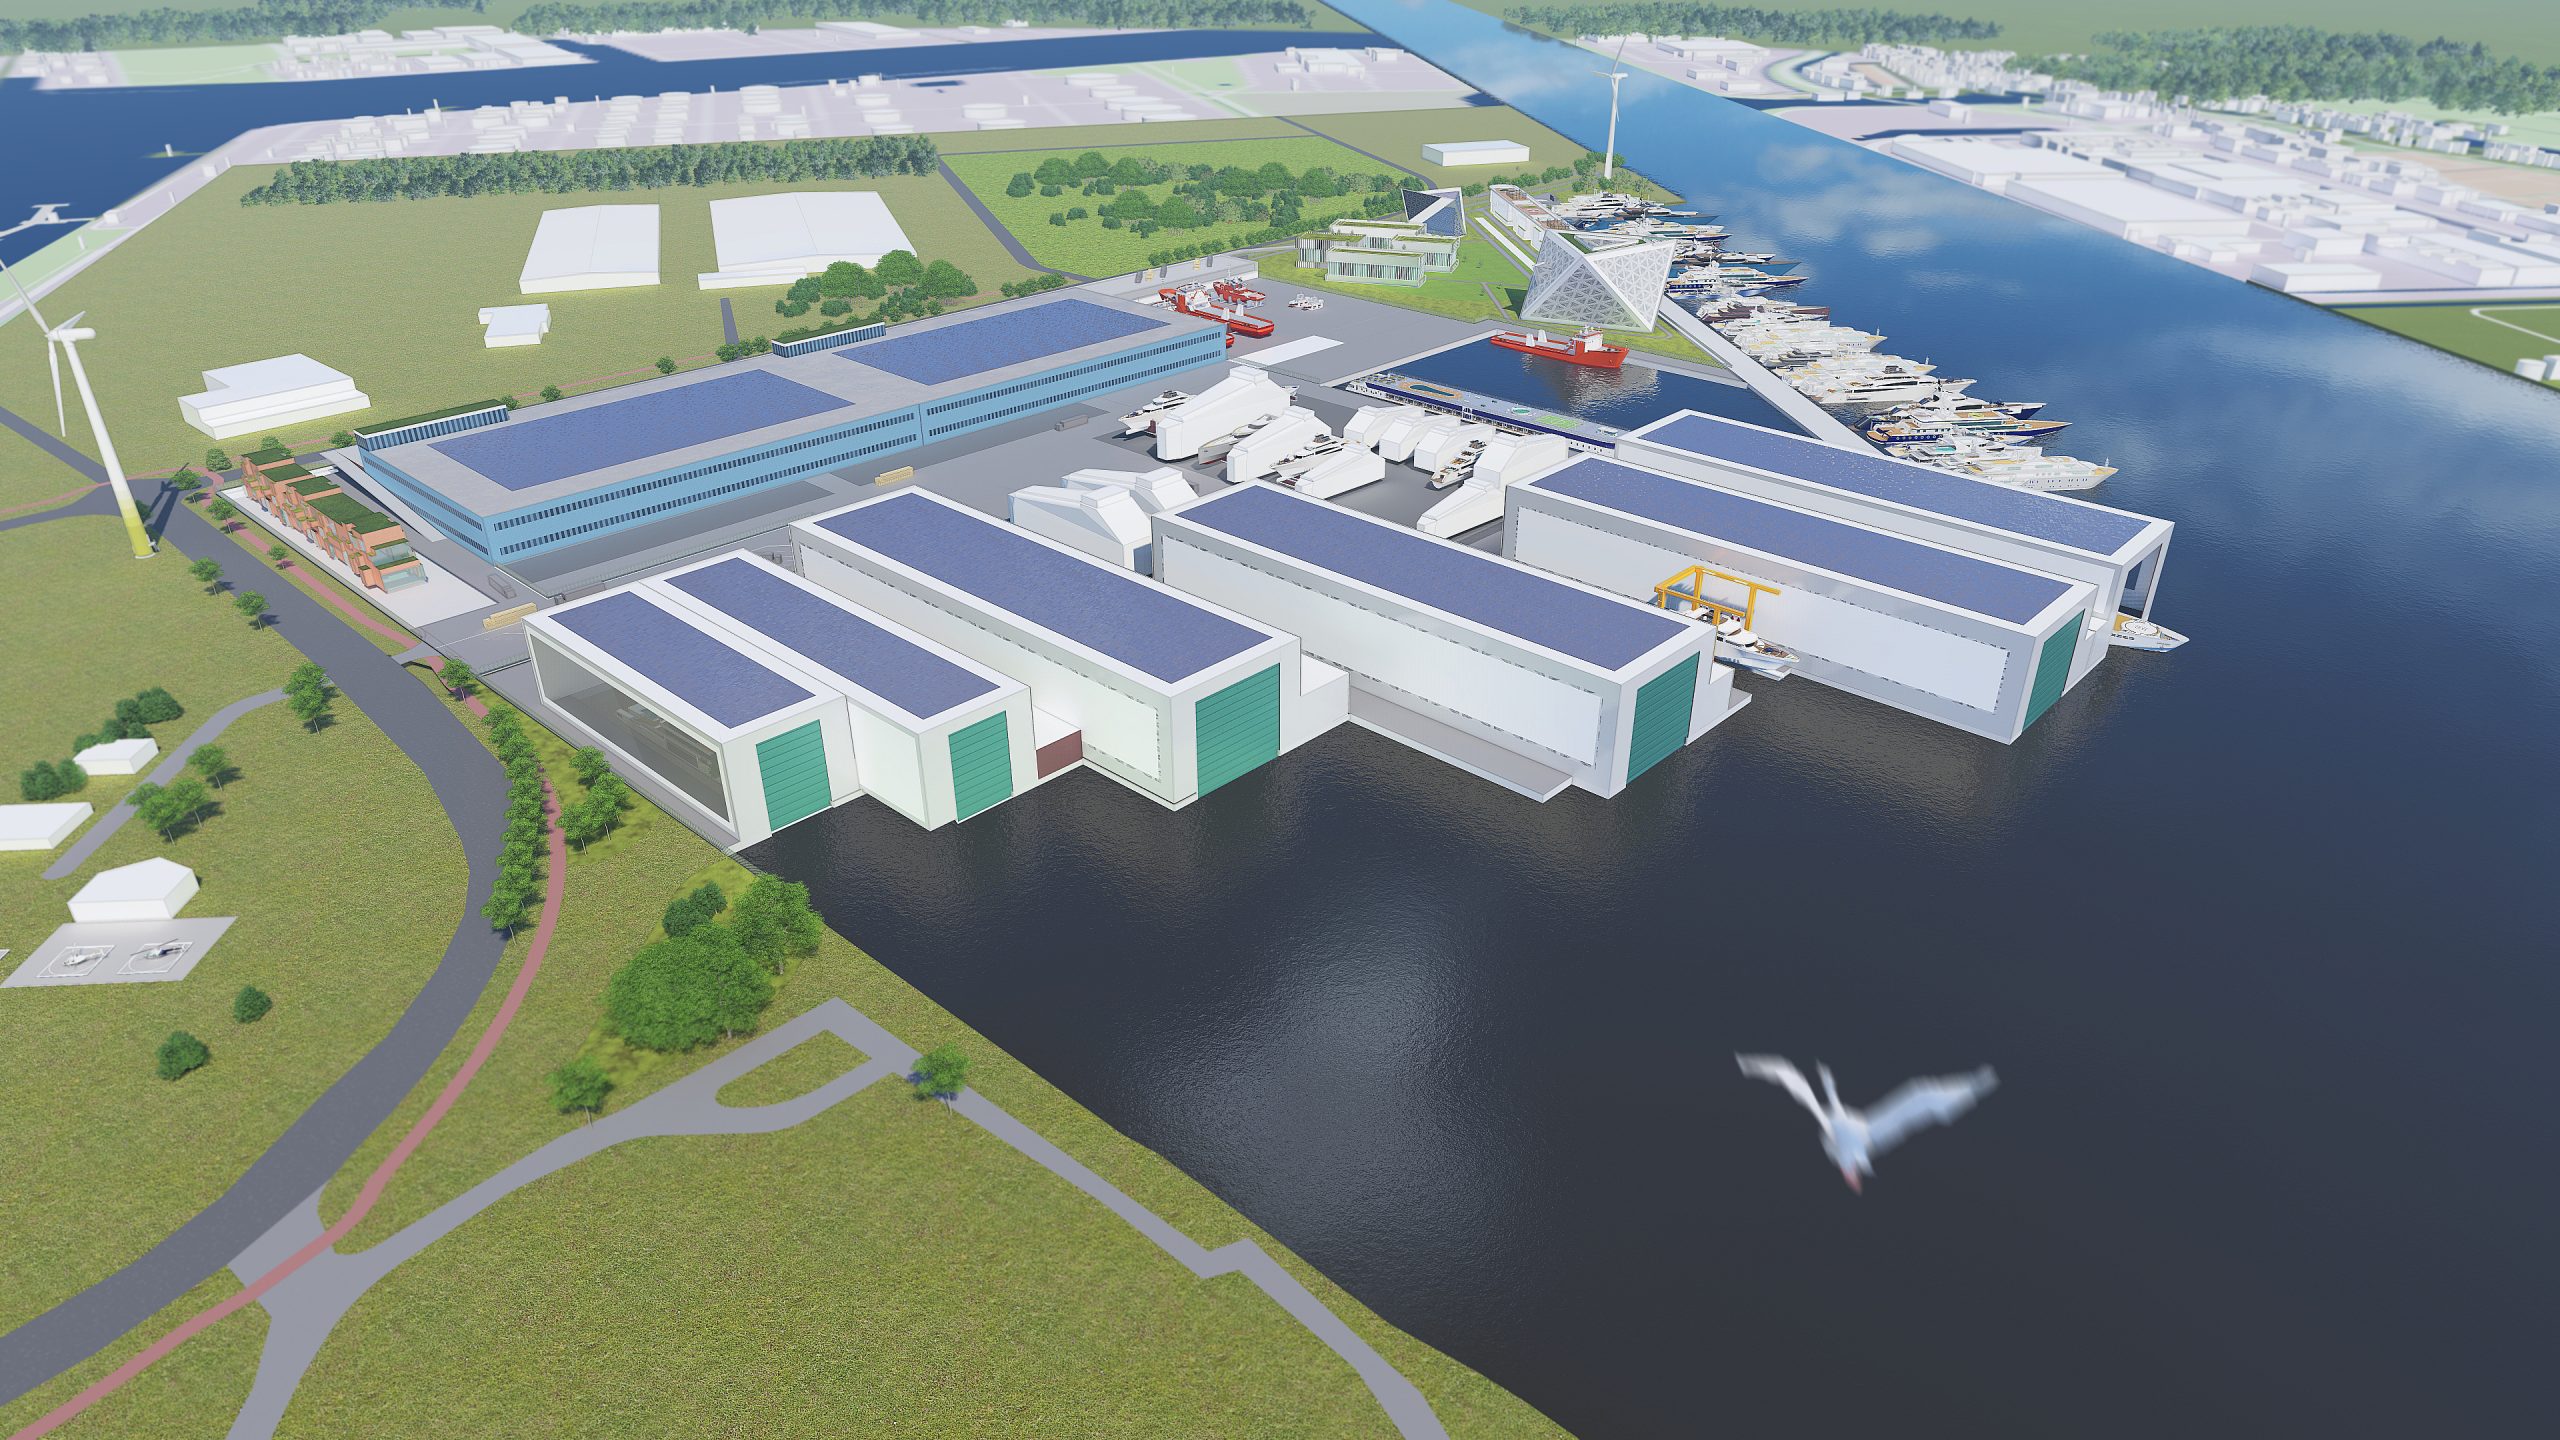 Artist's impression van de te ontwikkelen Dutch Superyacht Tech Campus op het terrein van de ADM-haven. Rechtsboven de geplande kademuur op de plaats waar nu de kegelplaatsen zijn. (Illustratie Larendael)